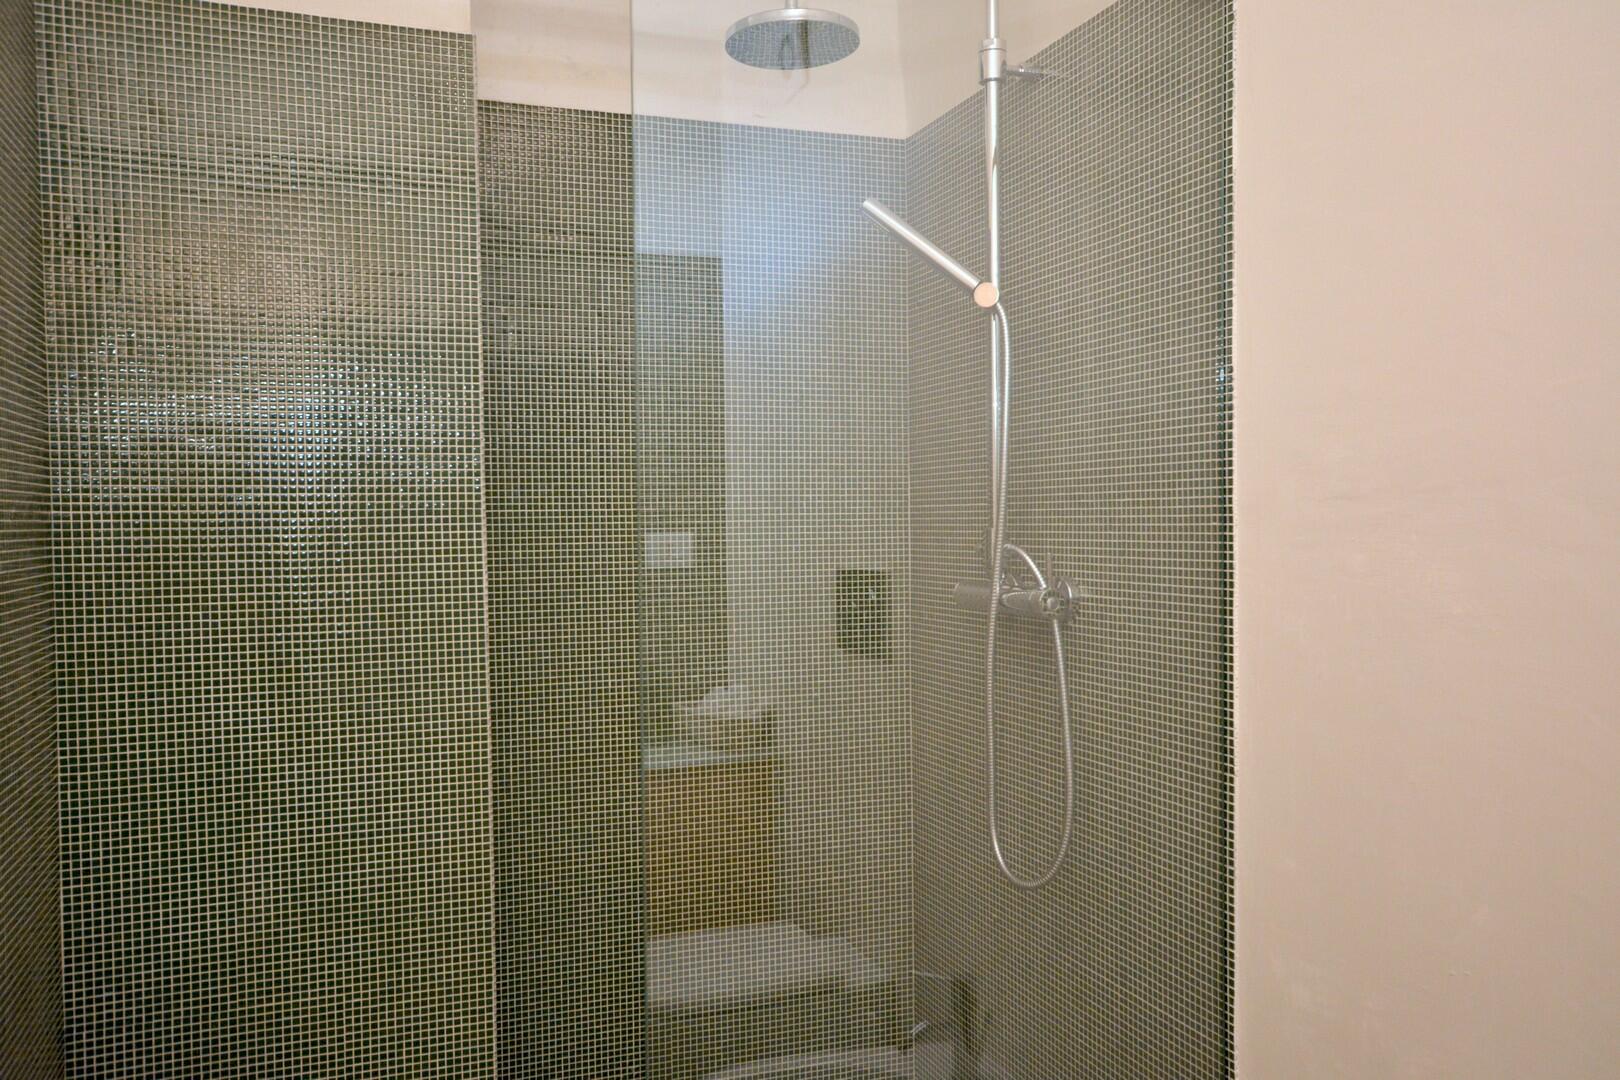 Ground floor - small double bedroom D -  shower room